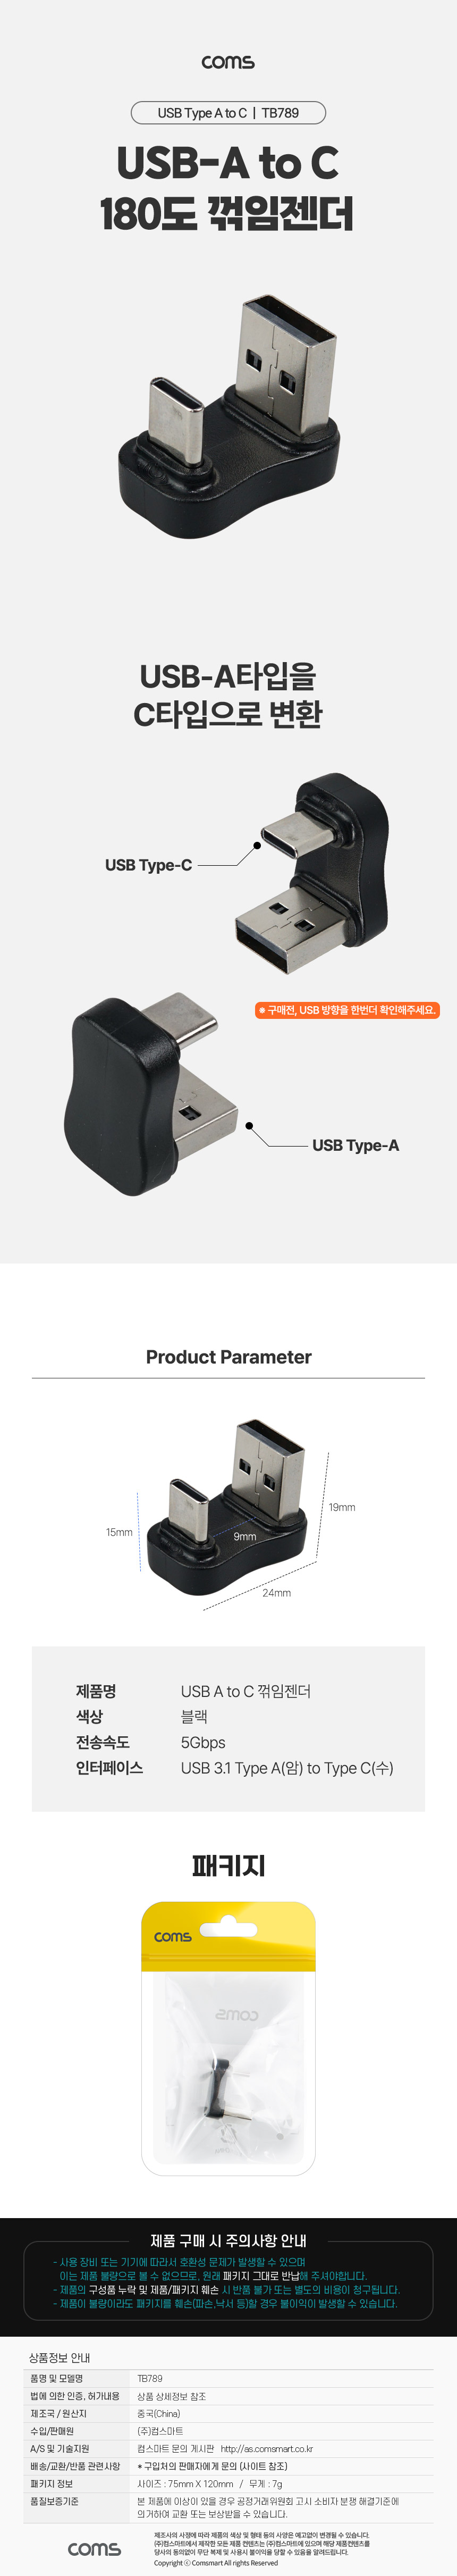 USB 3.1 Type C ȯ CŸ to USB3.0 5Gbps 180 